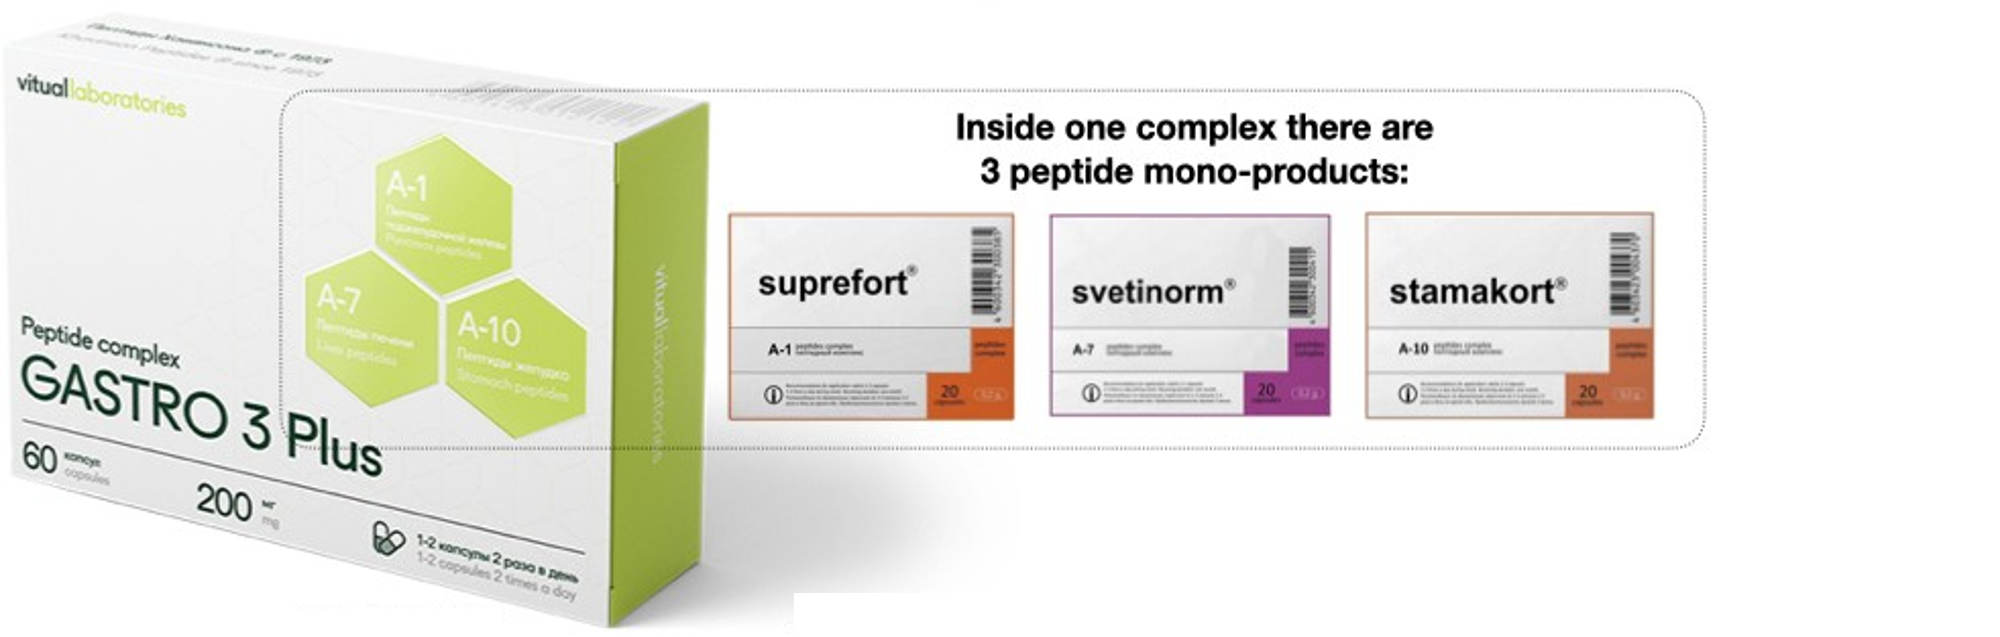 Gastro Peptide Complex 3 Plus